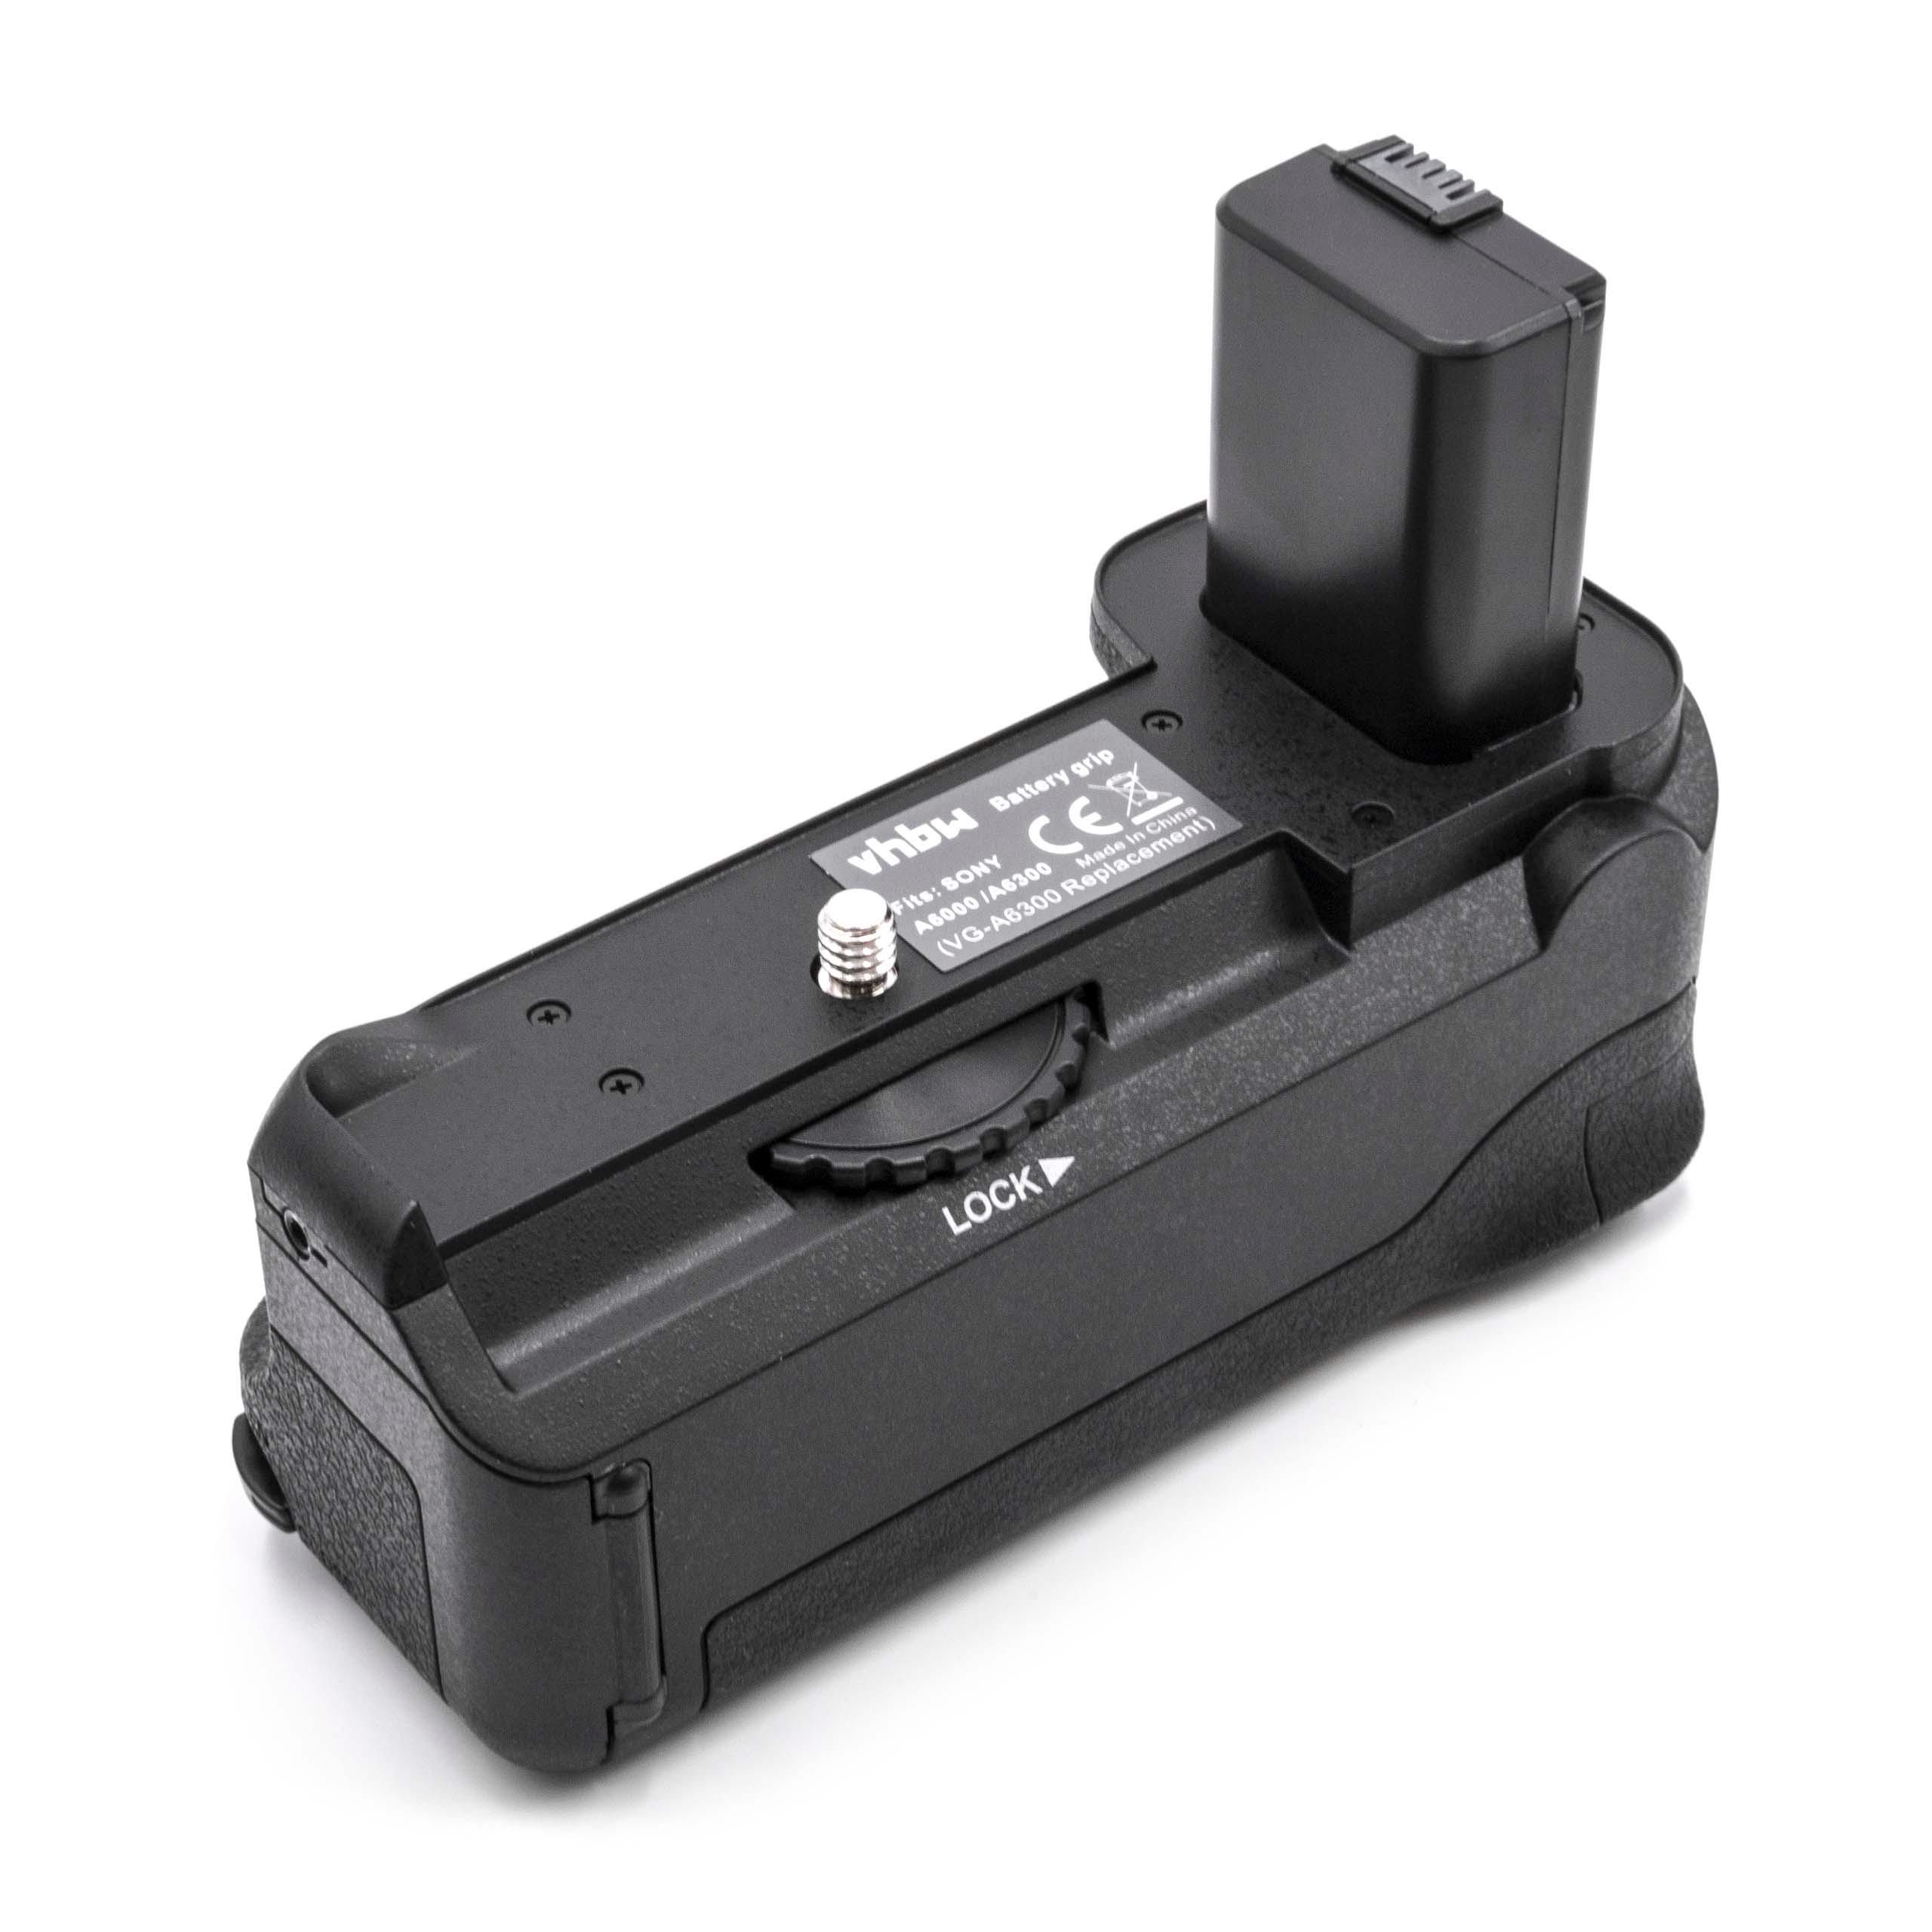 Batterie grip remplace Sony VG-A6300 pour appareil photo Sony - avec molette, déclencheur 